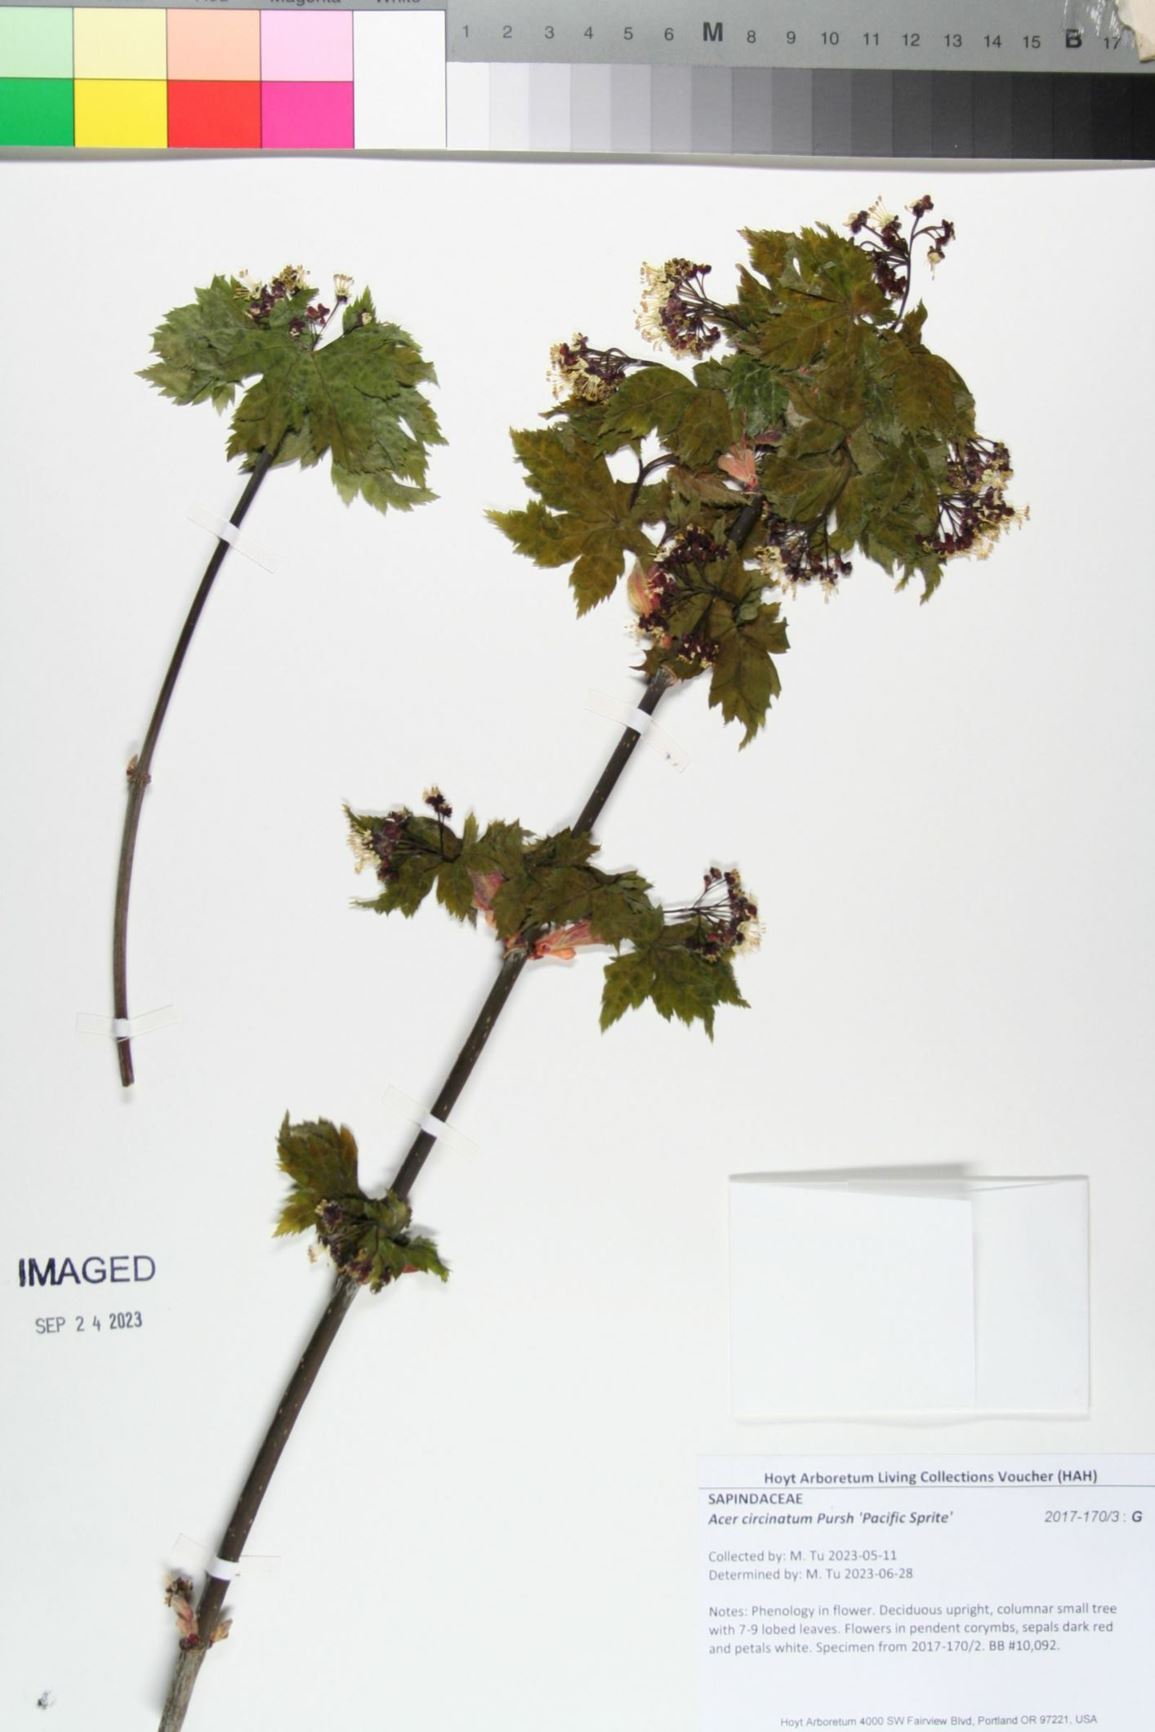 Acer circinatum 'Pacific Sprite' - pacific sprite vine maple